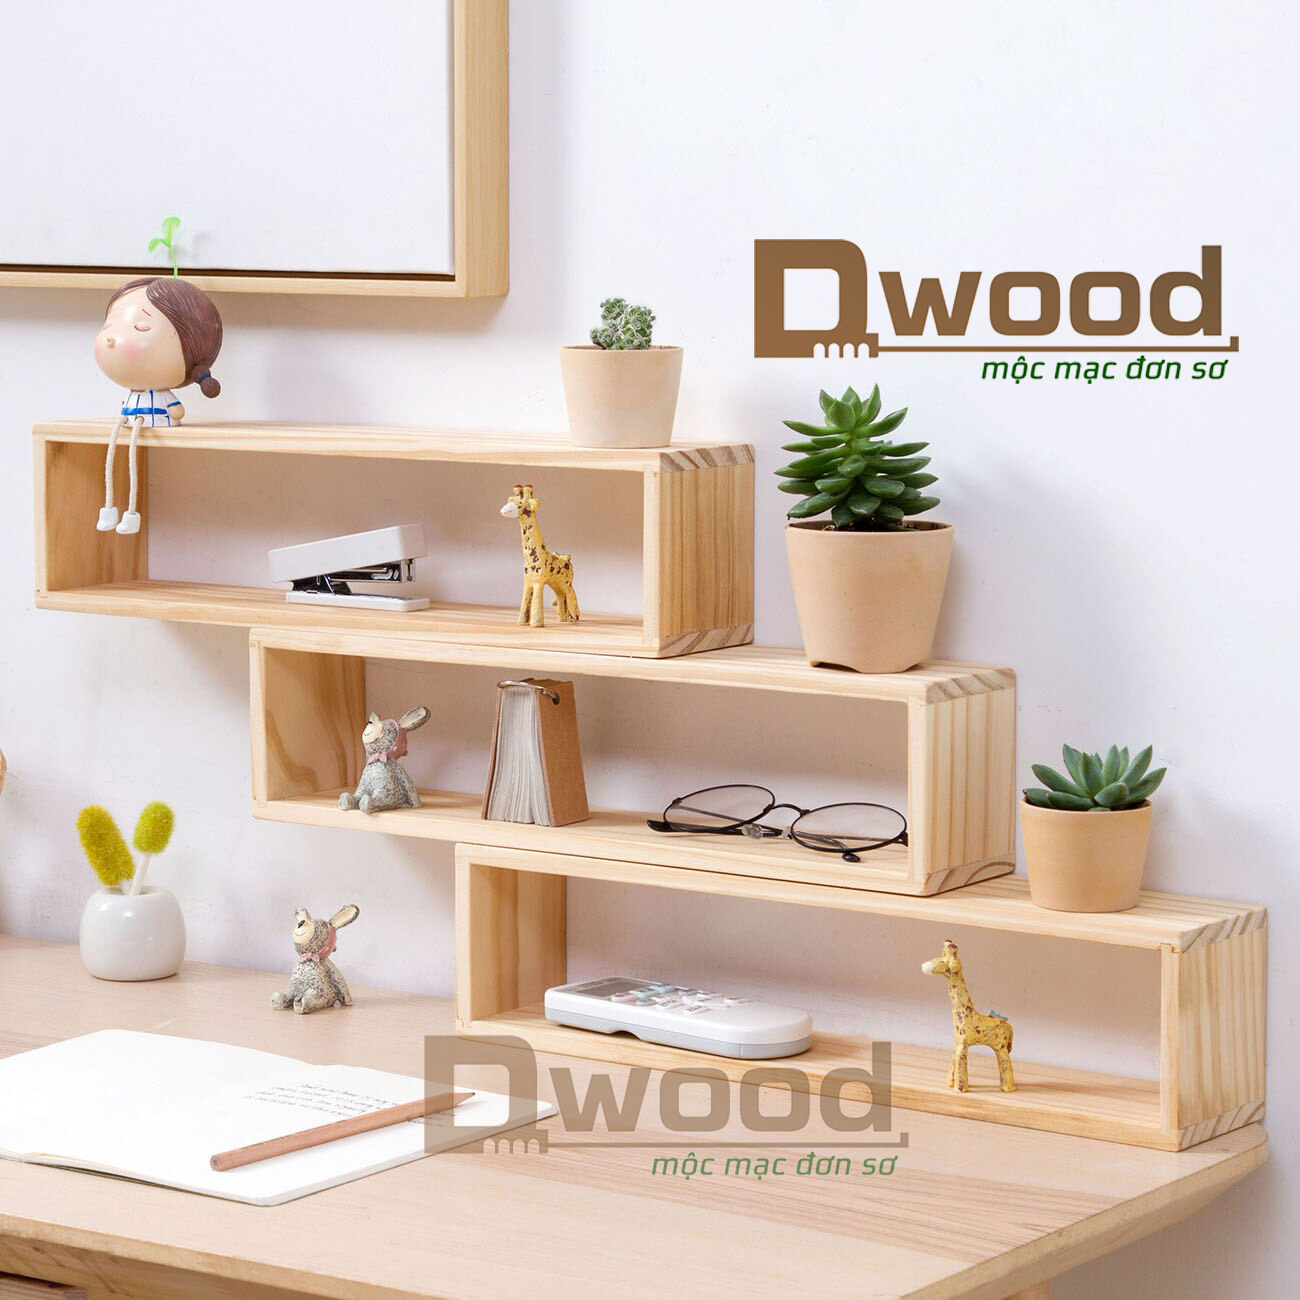 Kệ gỗ để bàn trang trí Dwood - 1 cái- Chuyenmoc.com